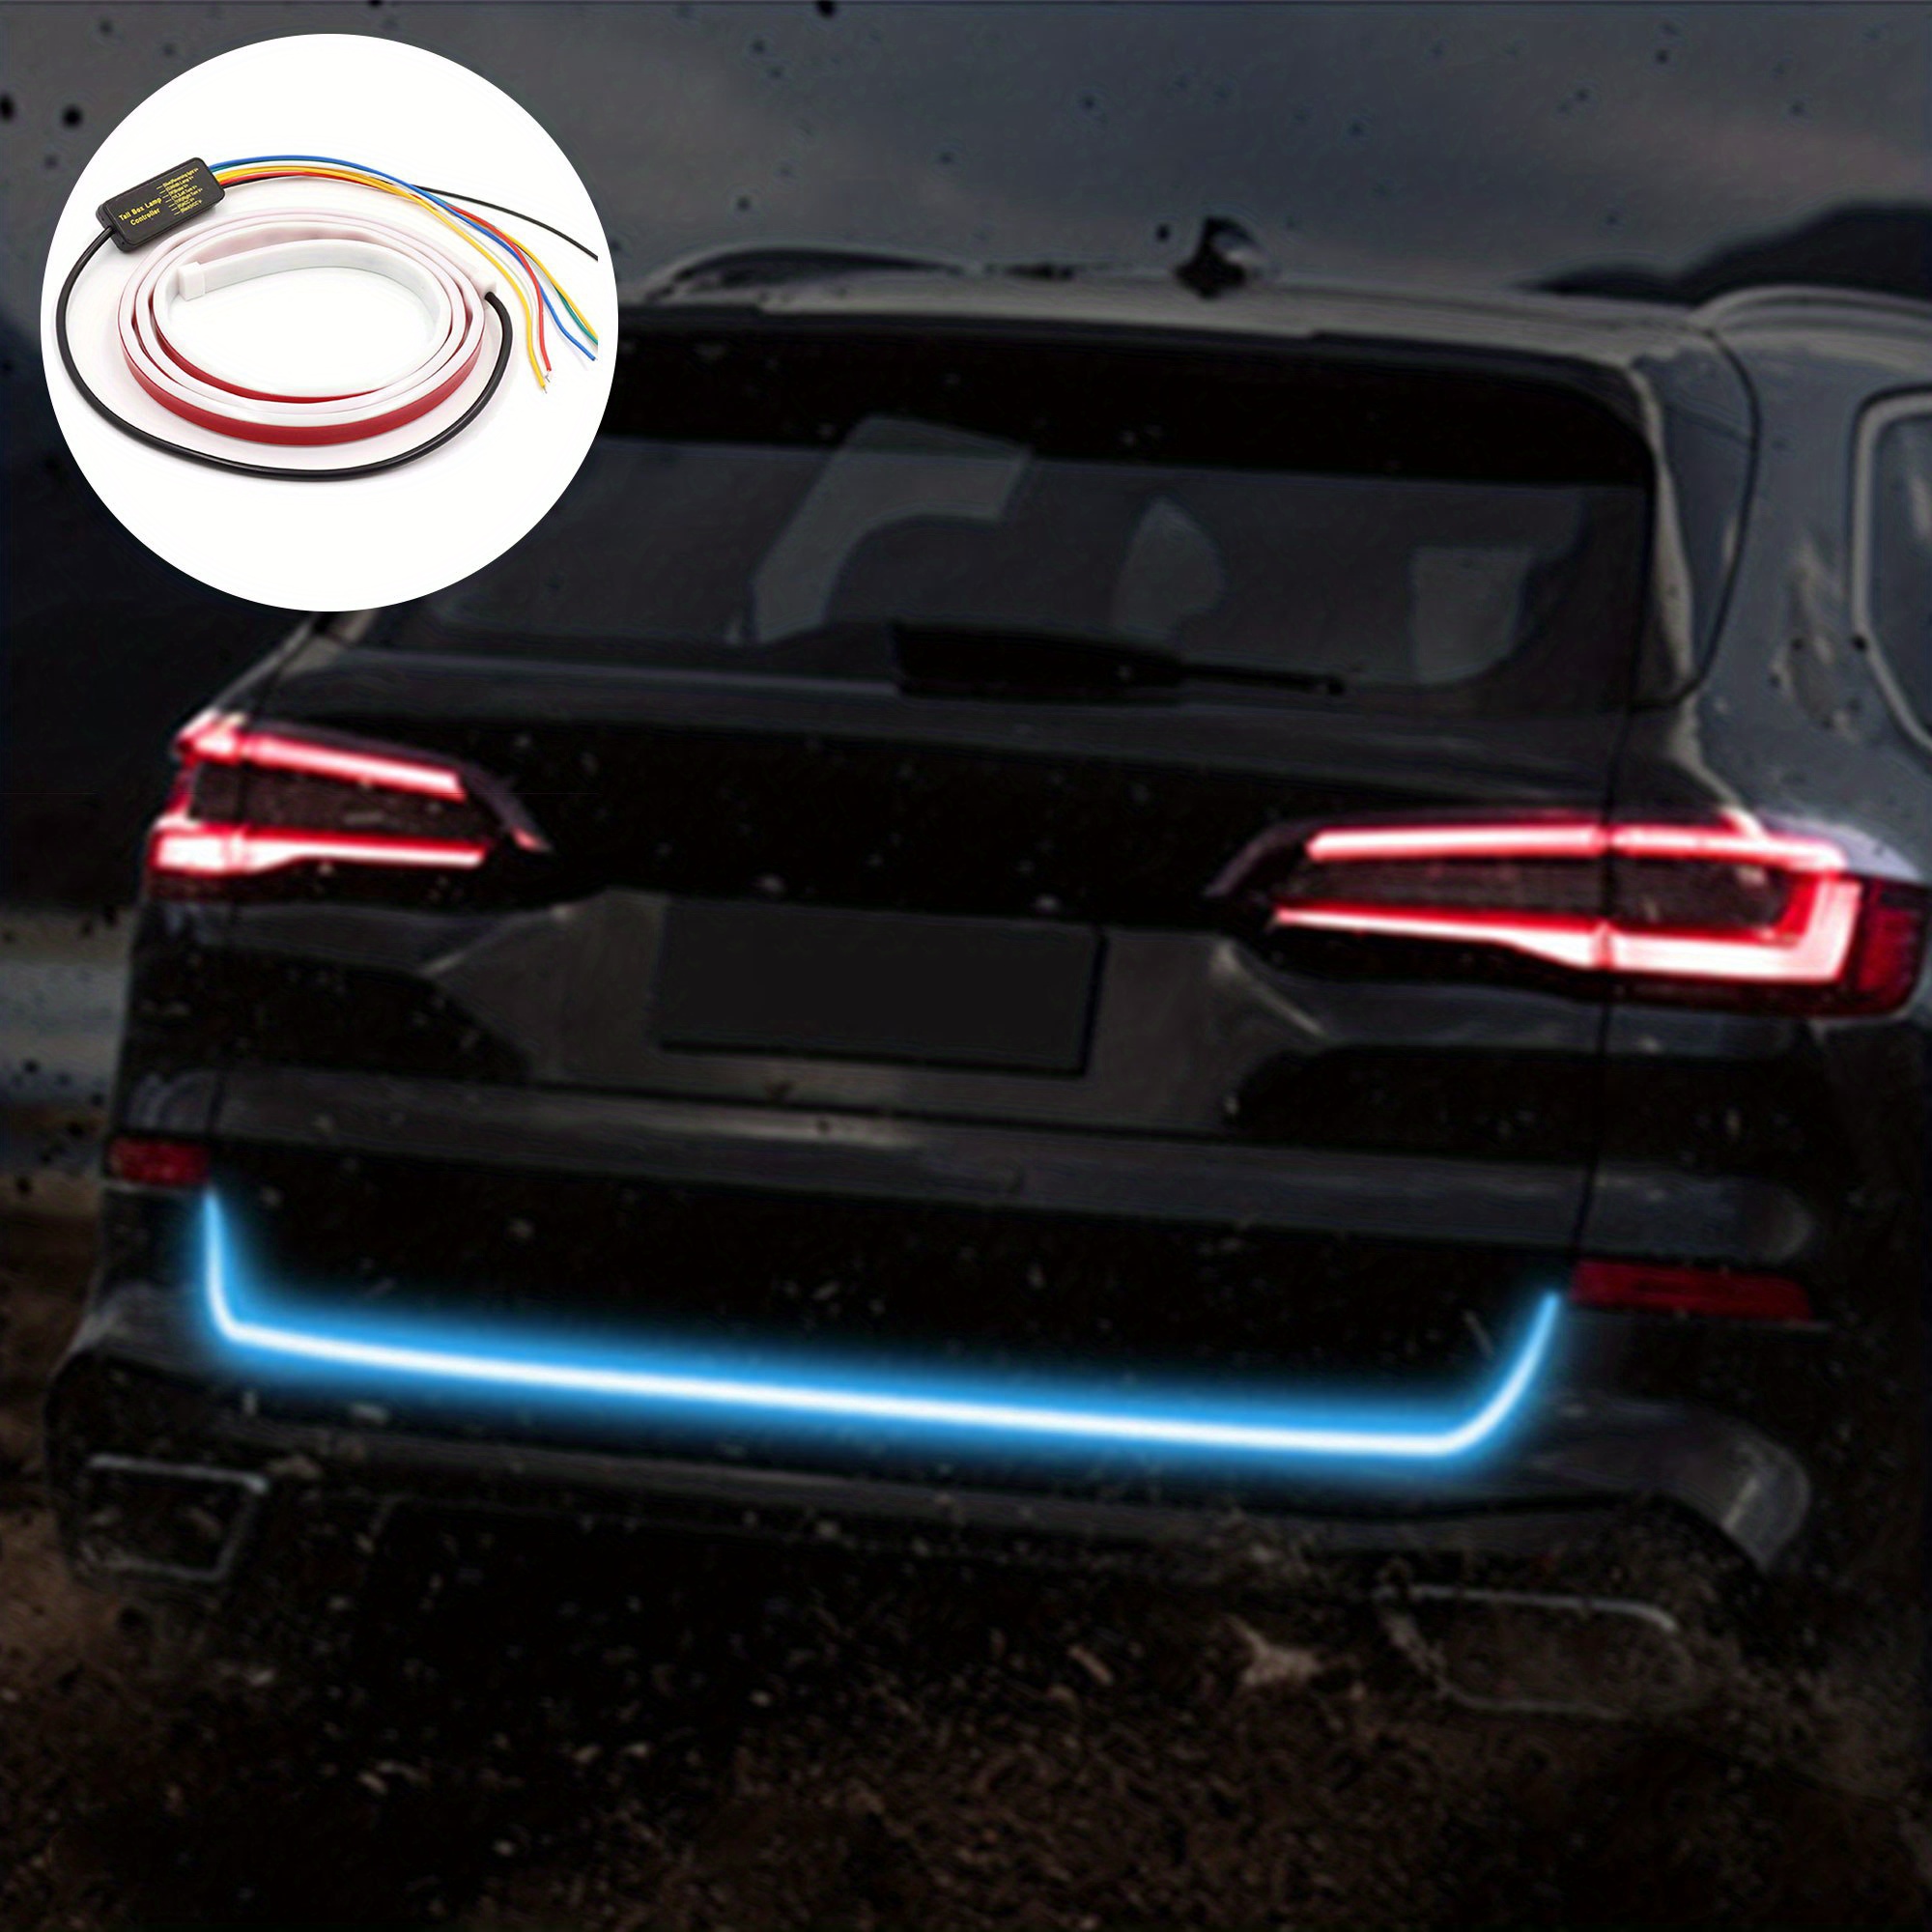 12V Car Rear Trunk Tail Light: Dynamic Streamer LED Strip for Daytime  Running Lights, Reverse Warning & Brake Turn Signal